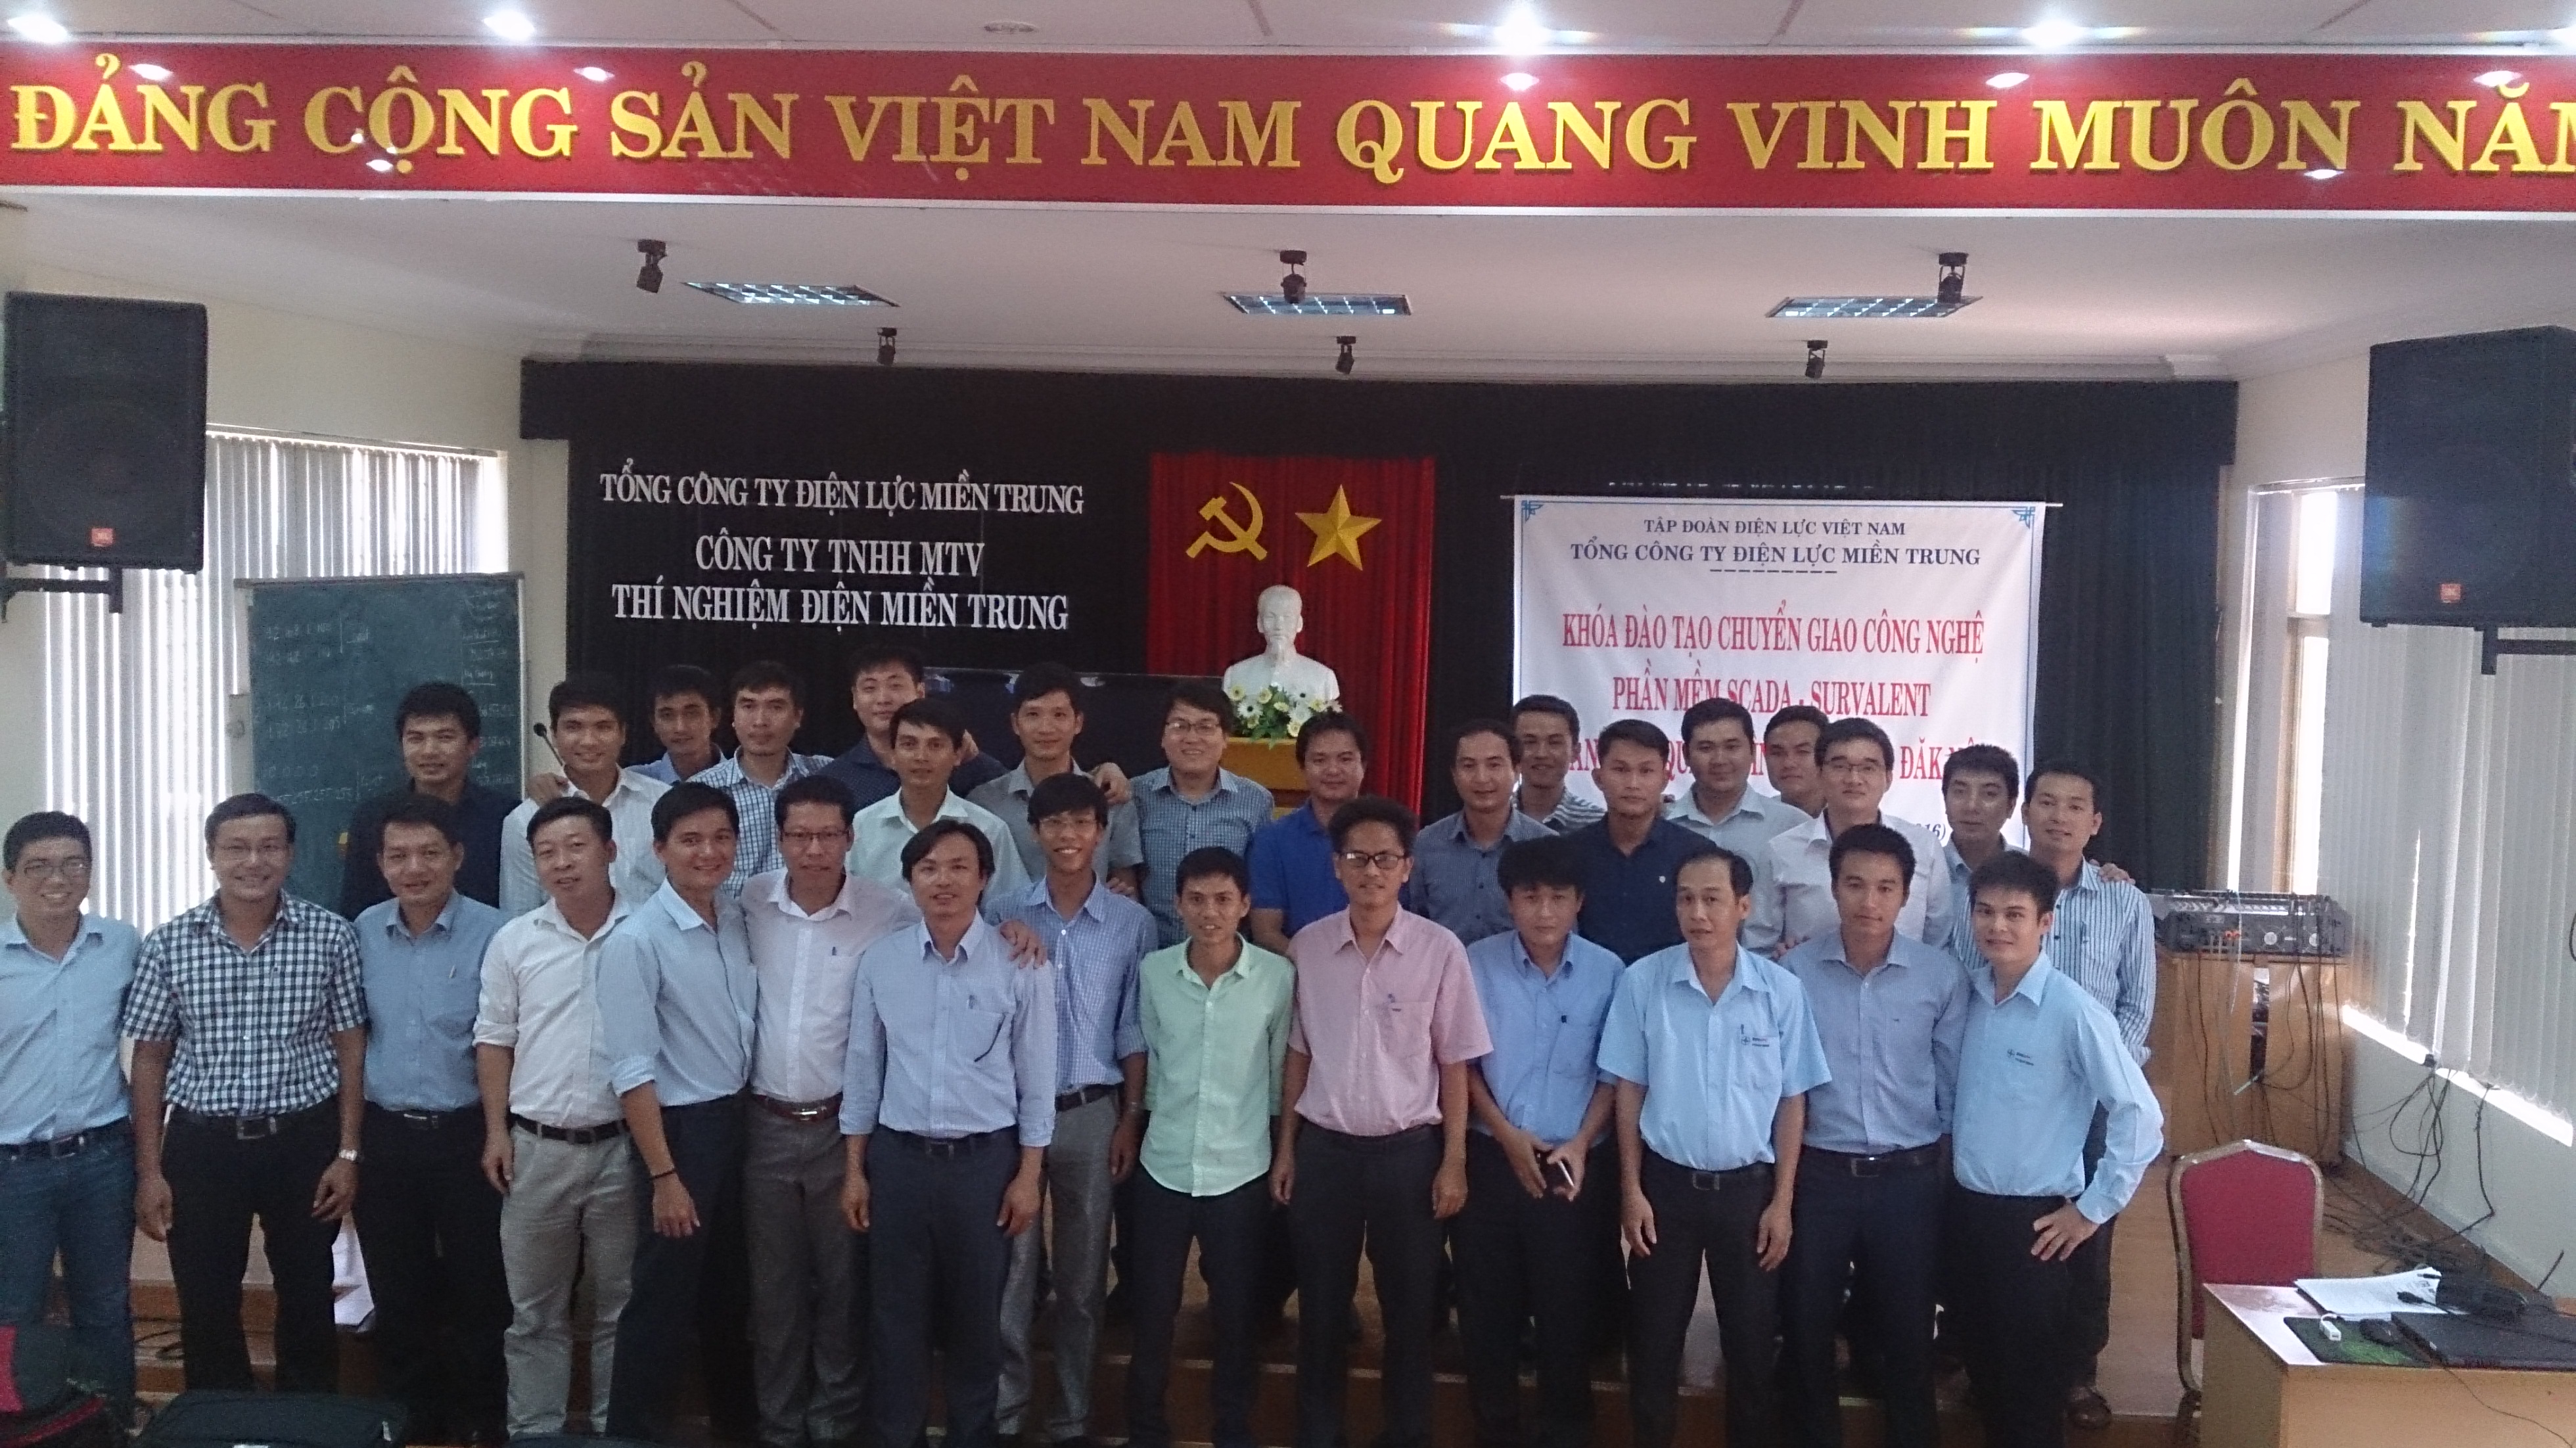 Construction of Control Centers at Quang Binh - Phu Yen - Dak Nong Power Companies